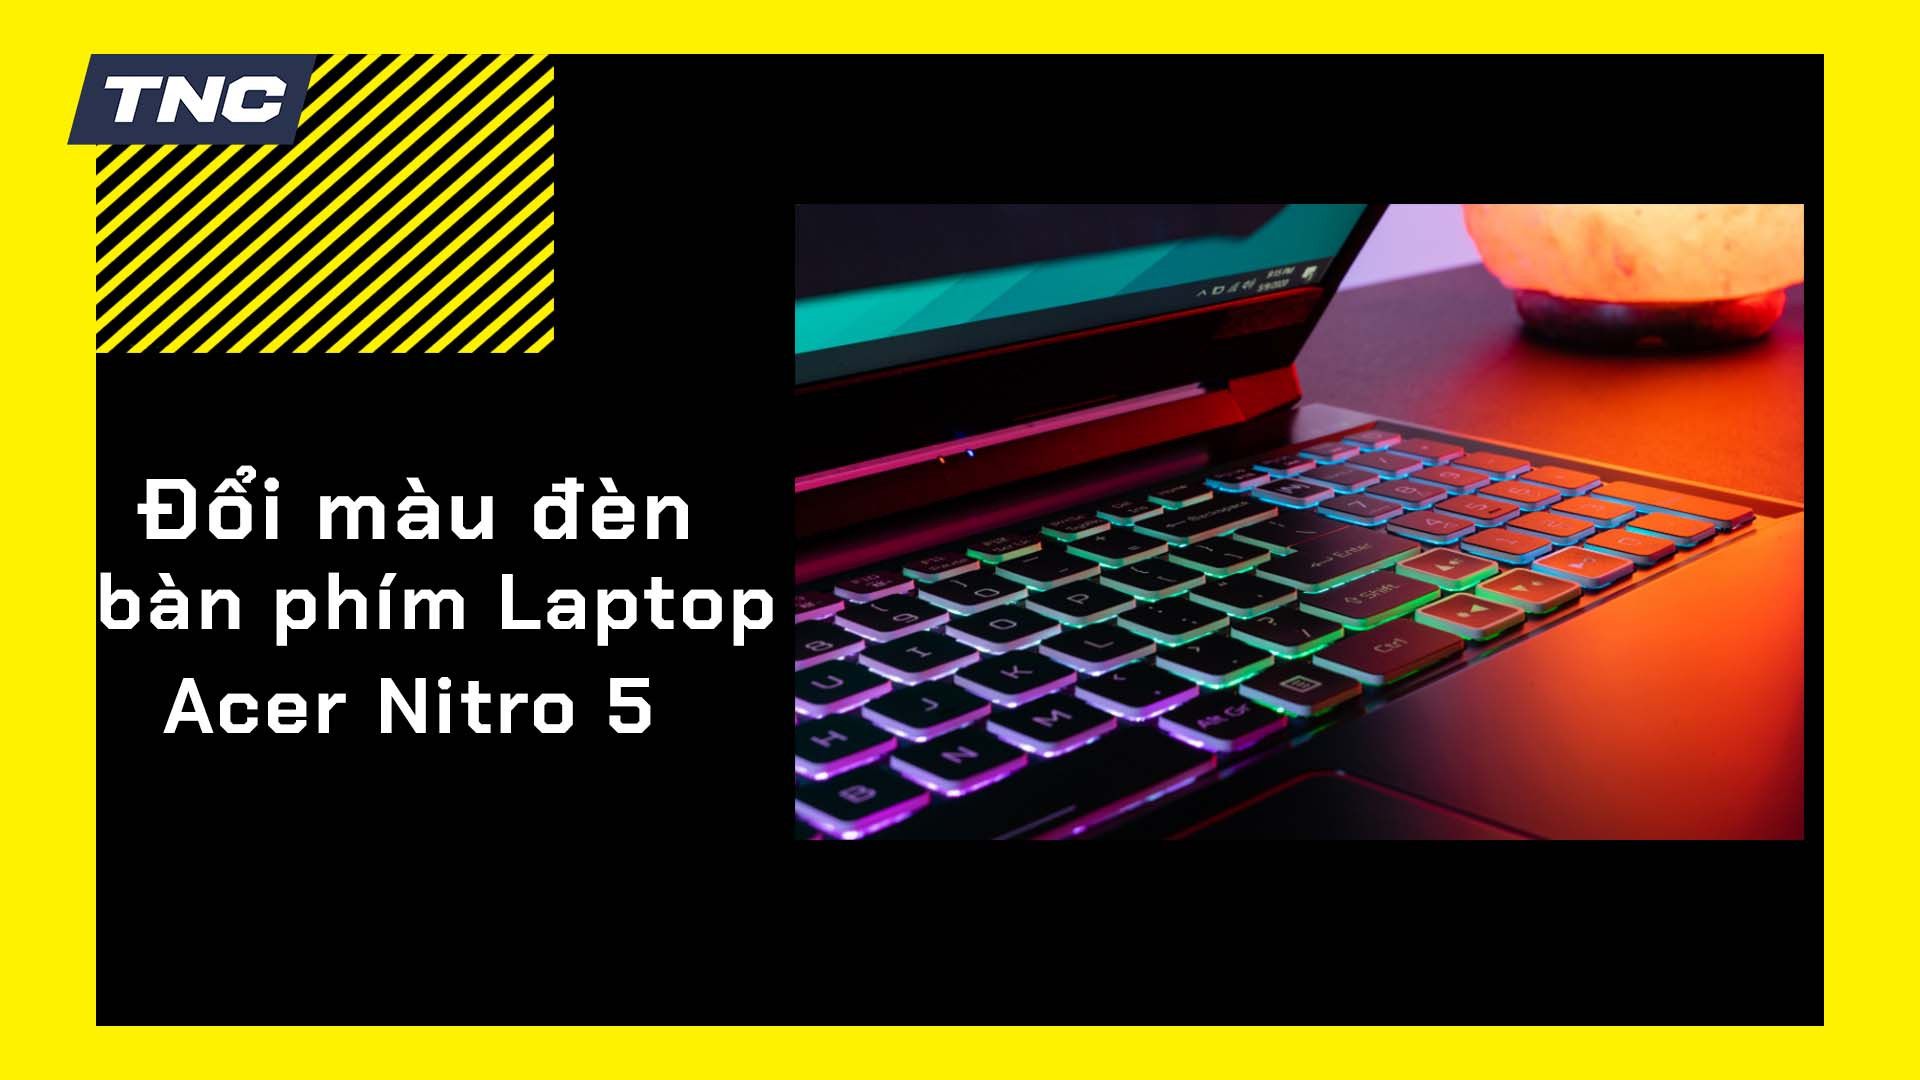 Hướng dẫn đổi màu đèn bàn phím Acer Nitro 5 đơn giản tại nhà